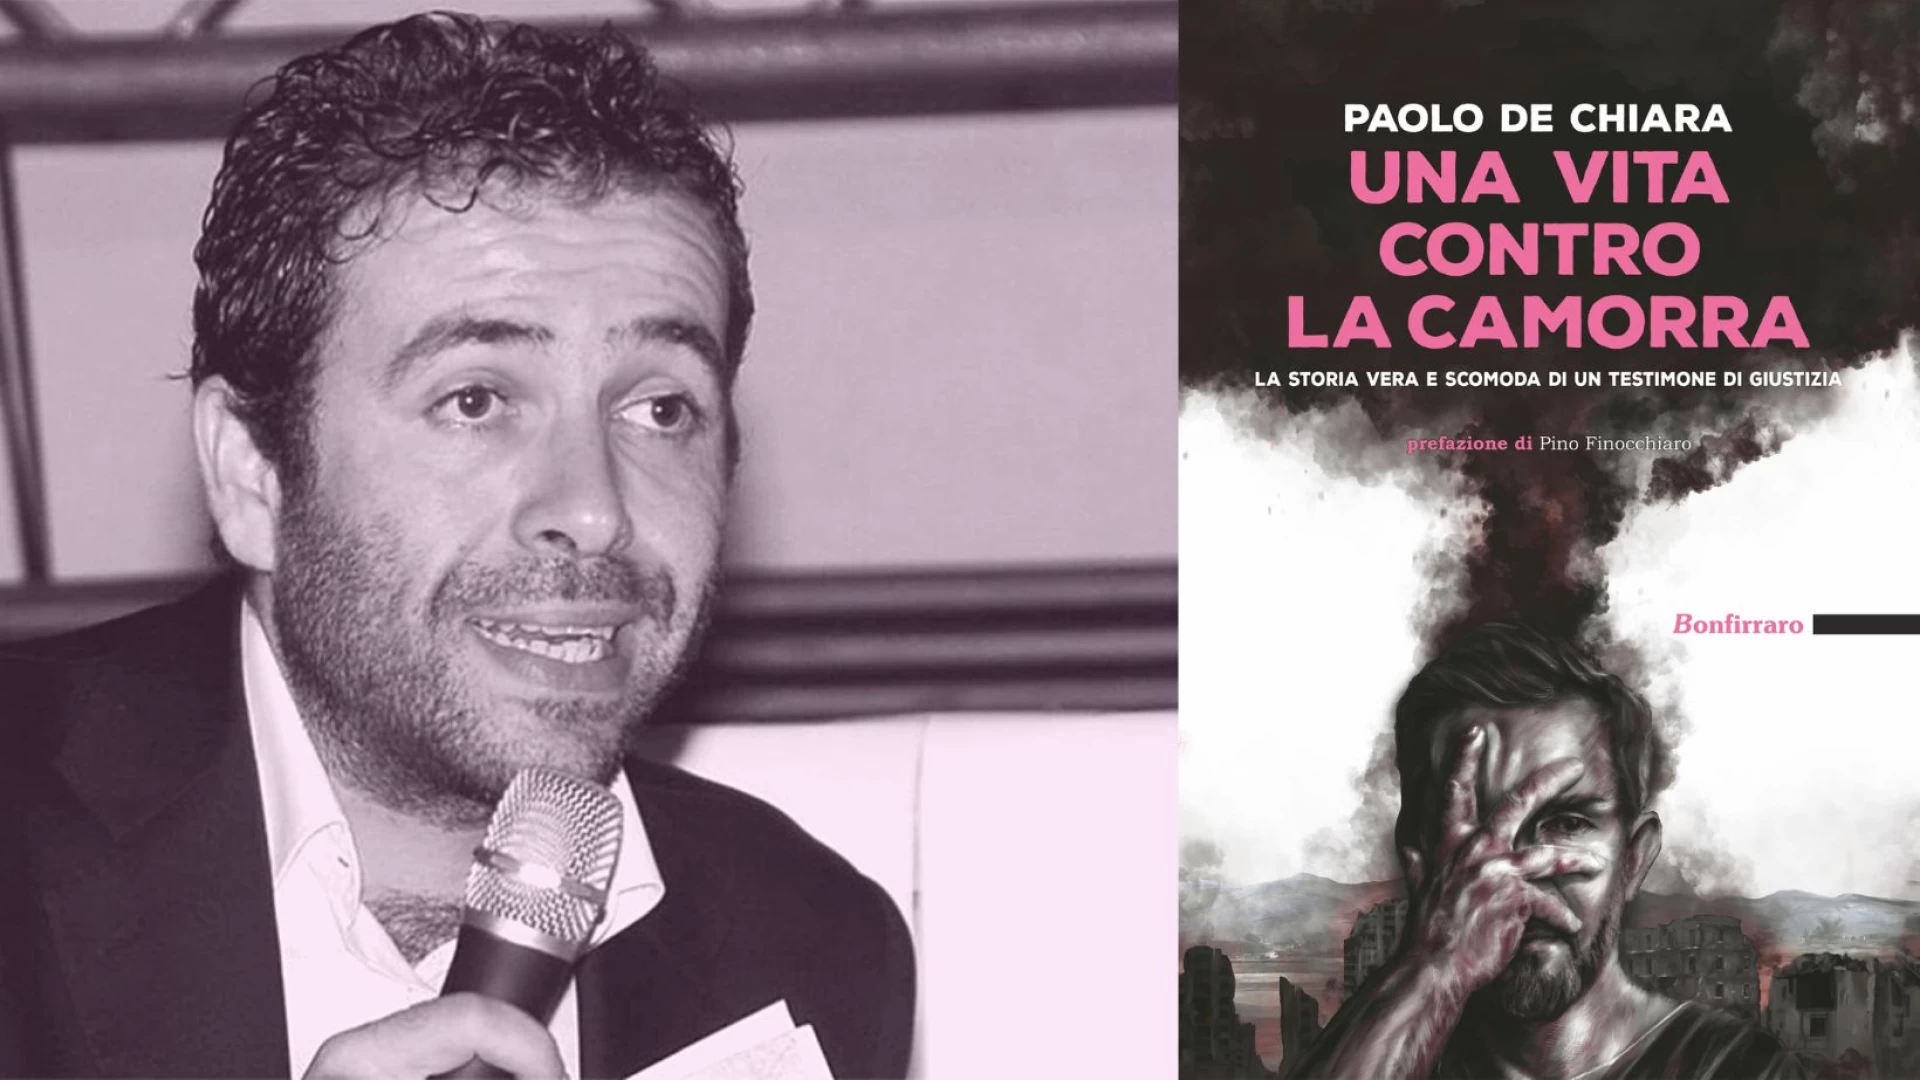 Una vita contro la camorra,il nuovo libro di Paolo De Chiara che fa tremare il sistema Autostrade, Appalti e Camorra.